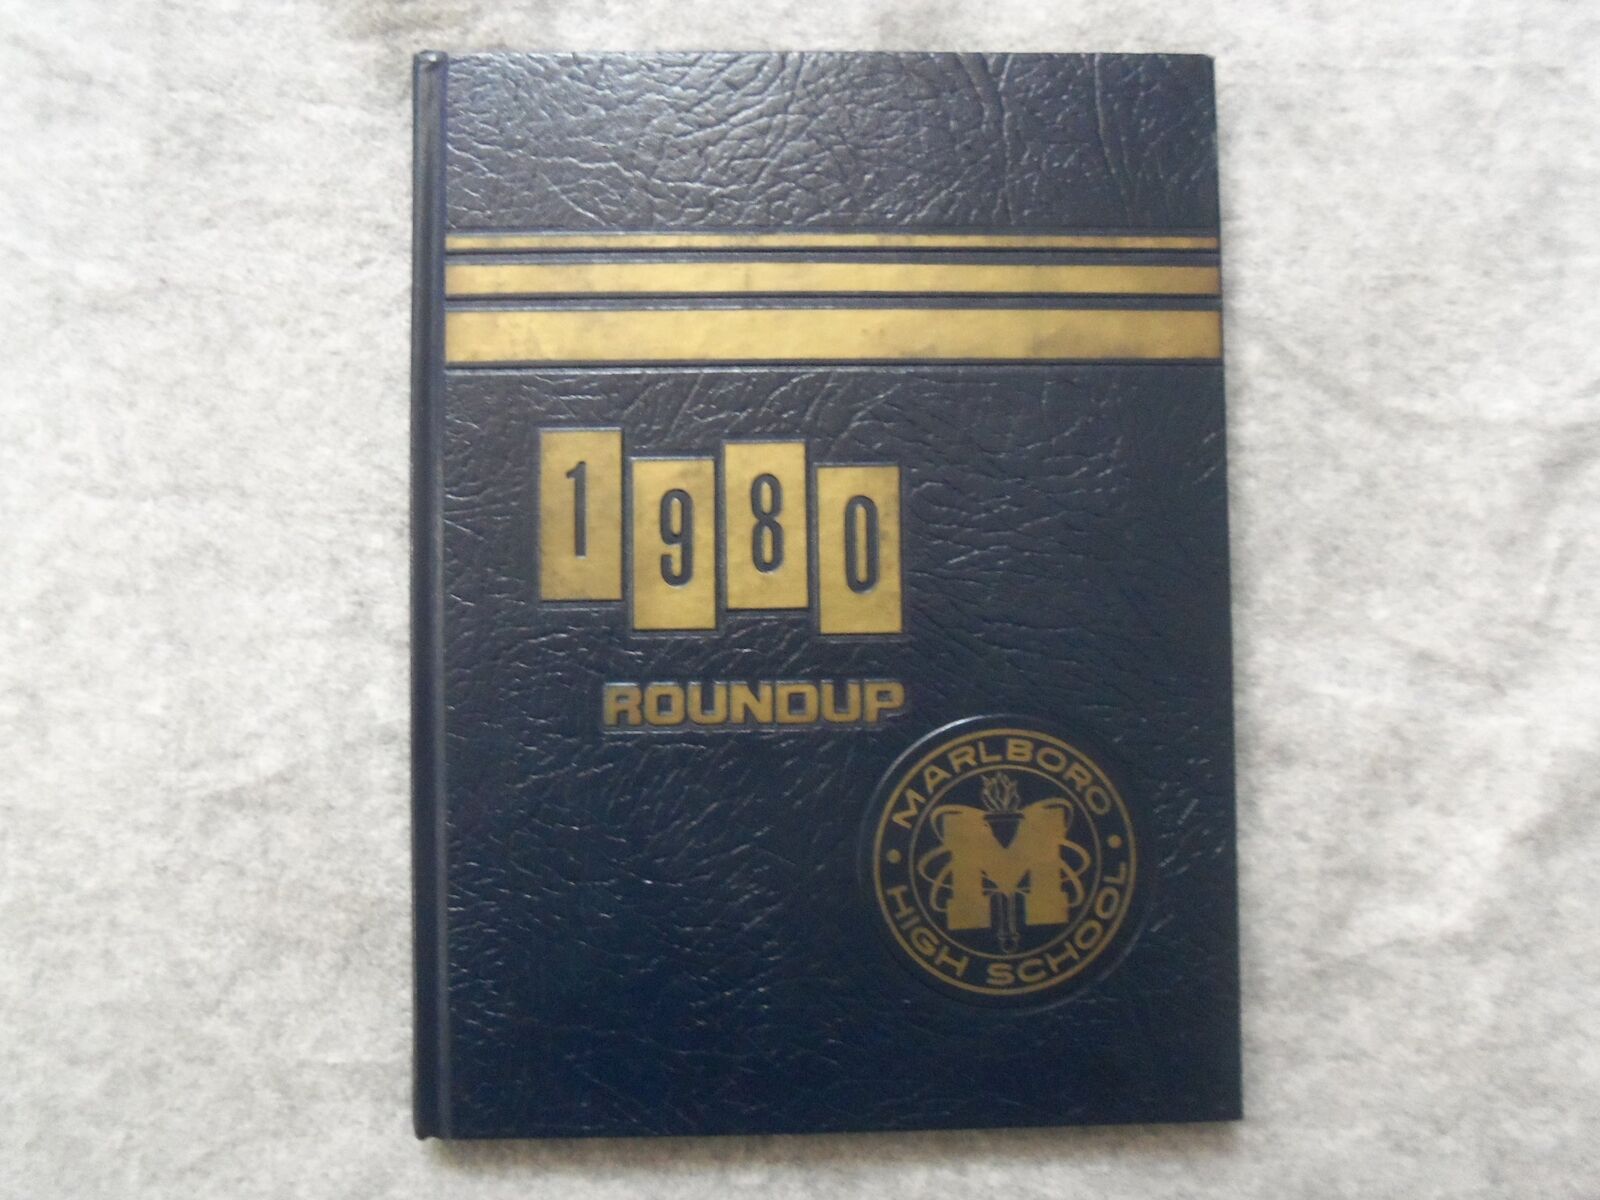 1980 ROUNDUP MARLBORO HIGH SCHOOL YEARBOOK - MARLBORO, NJ - YB 3216